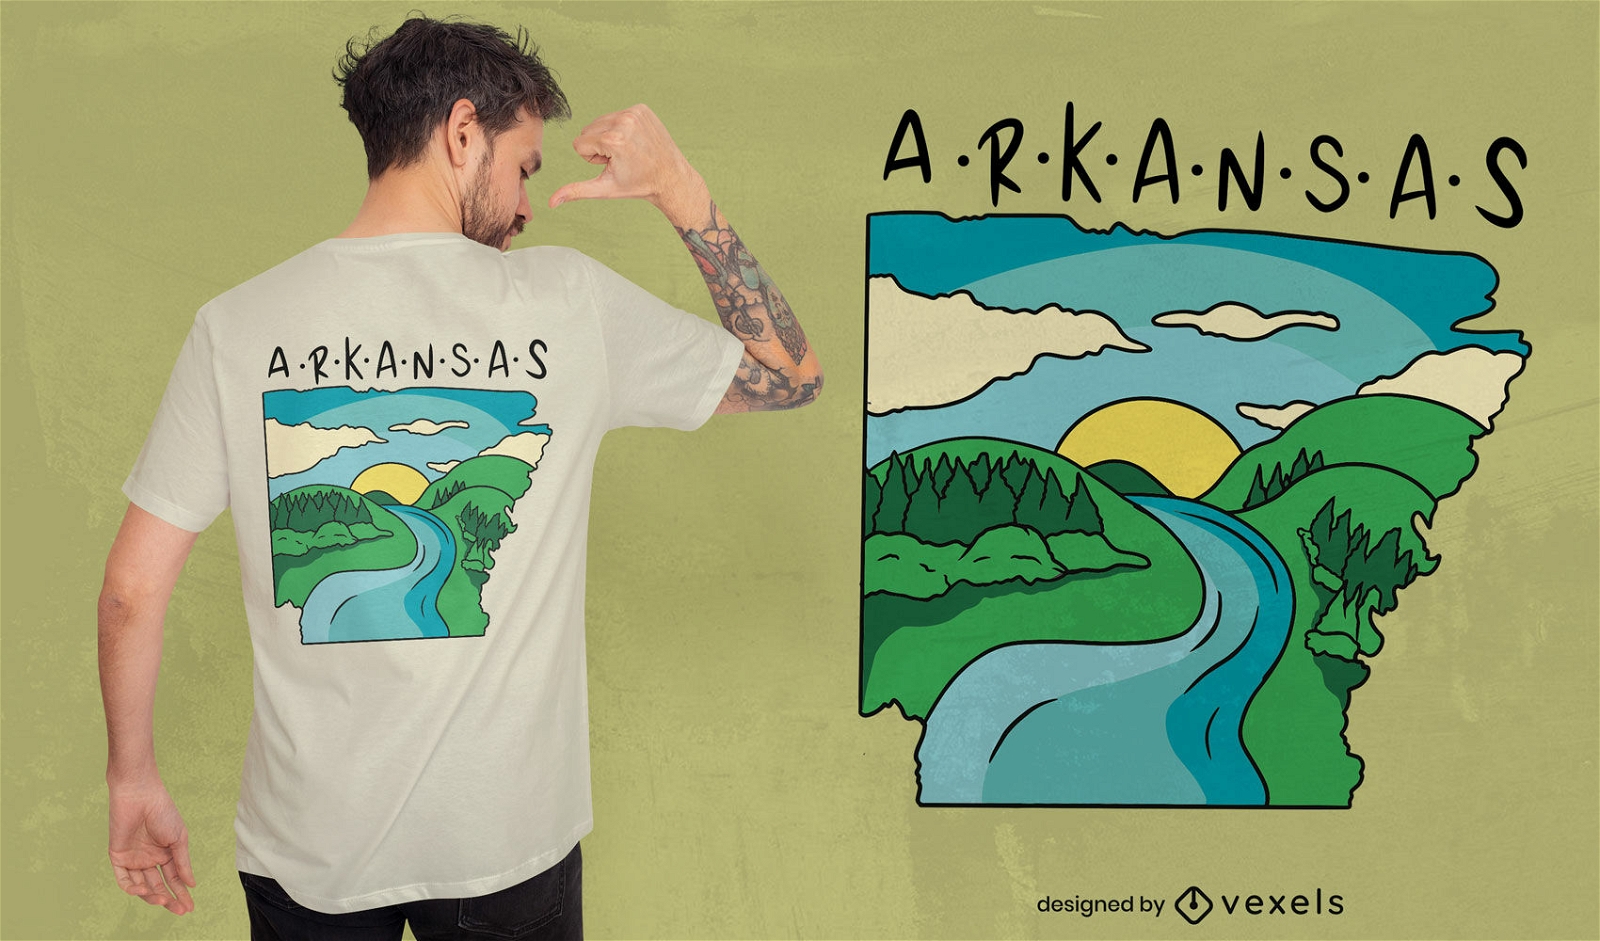 Dise?o de camiseta de paisaje natural de Arkansas.